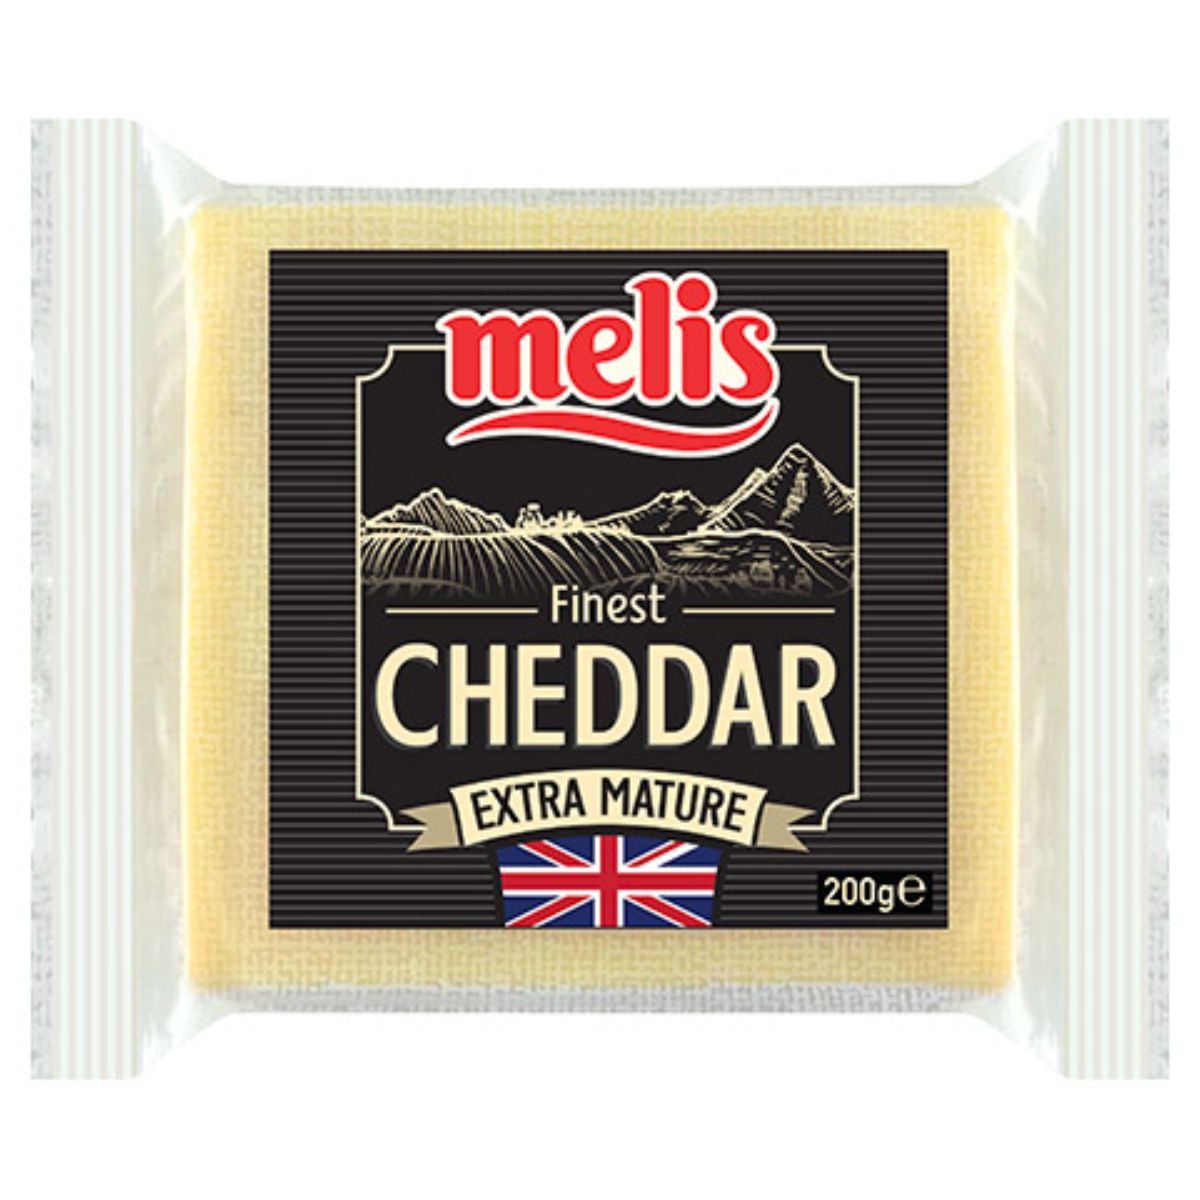 Melis - Extra Mature Cheddar Cheese - 200g natural.